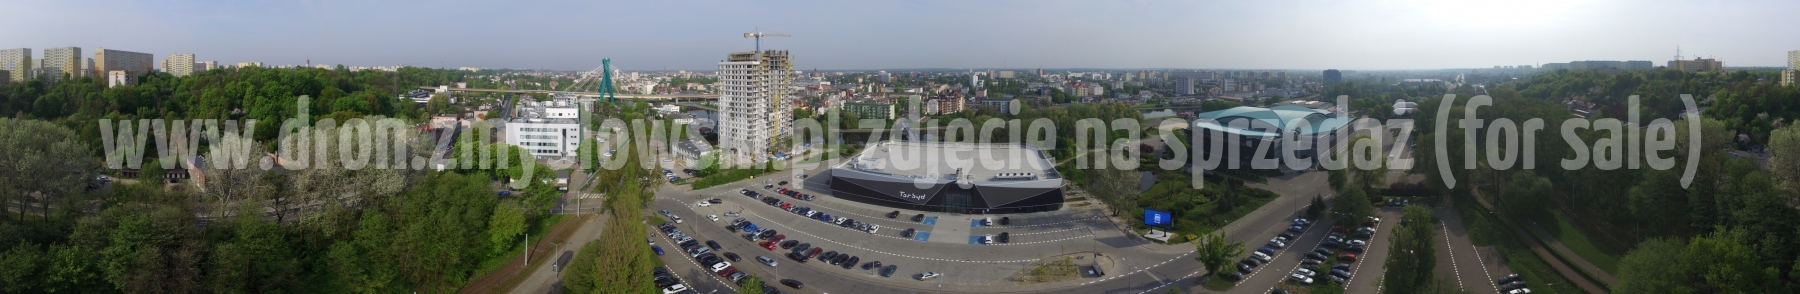 Bydgoszcz - Torbyd z drona - 2018